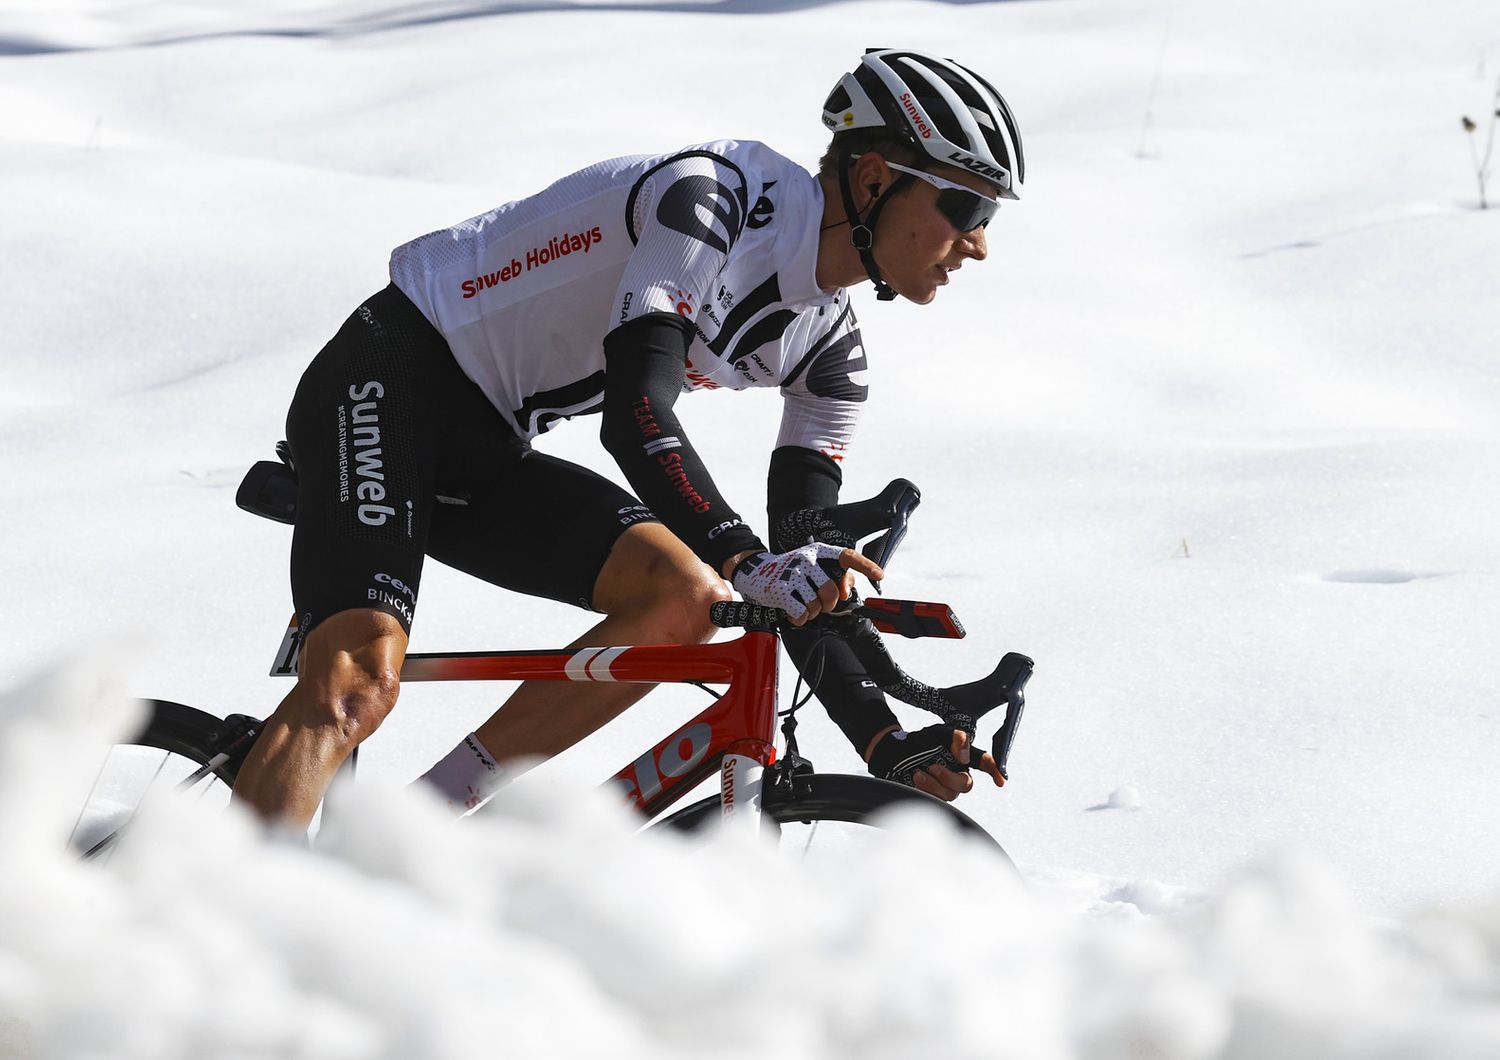 Kelderman, Giro d'Italia